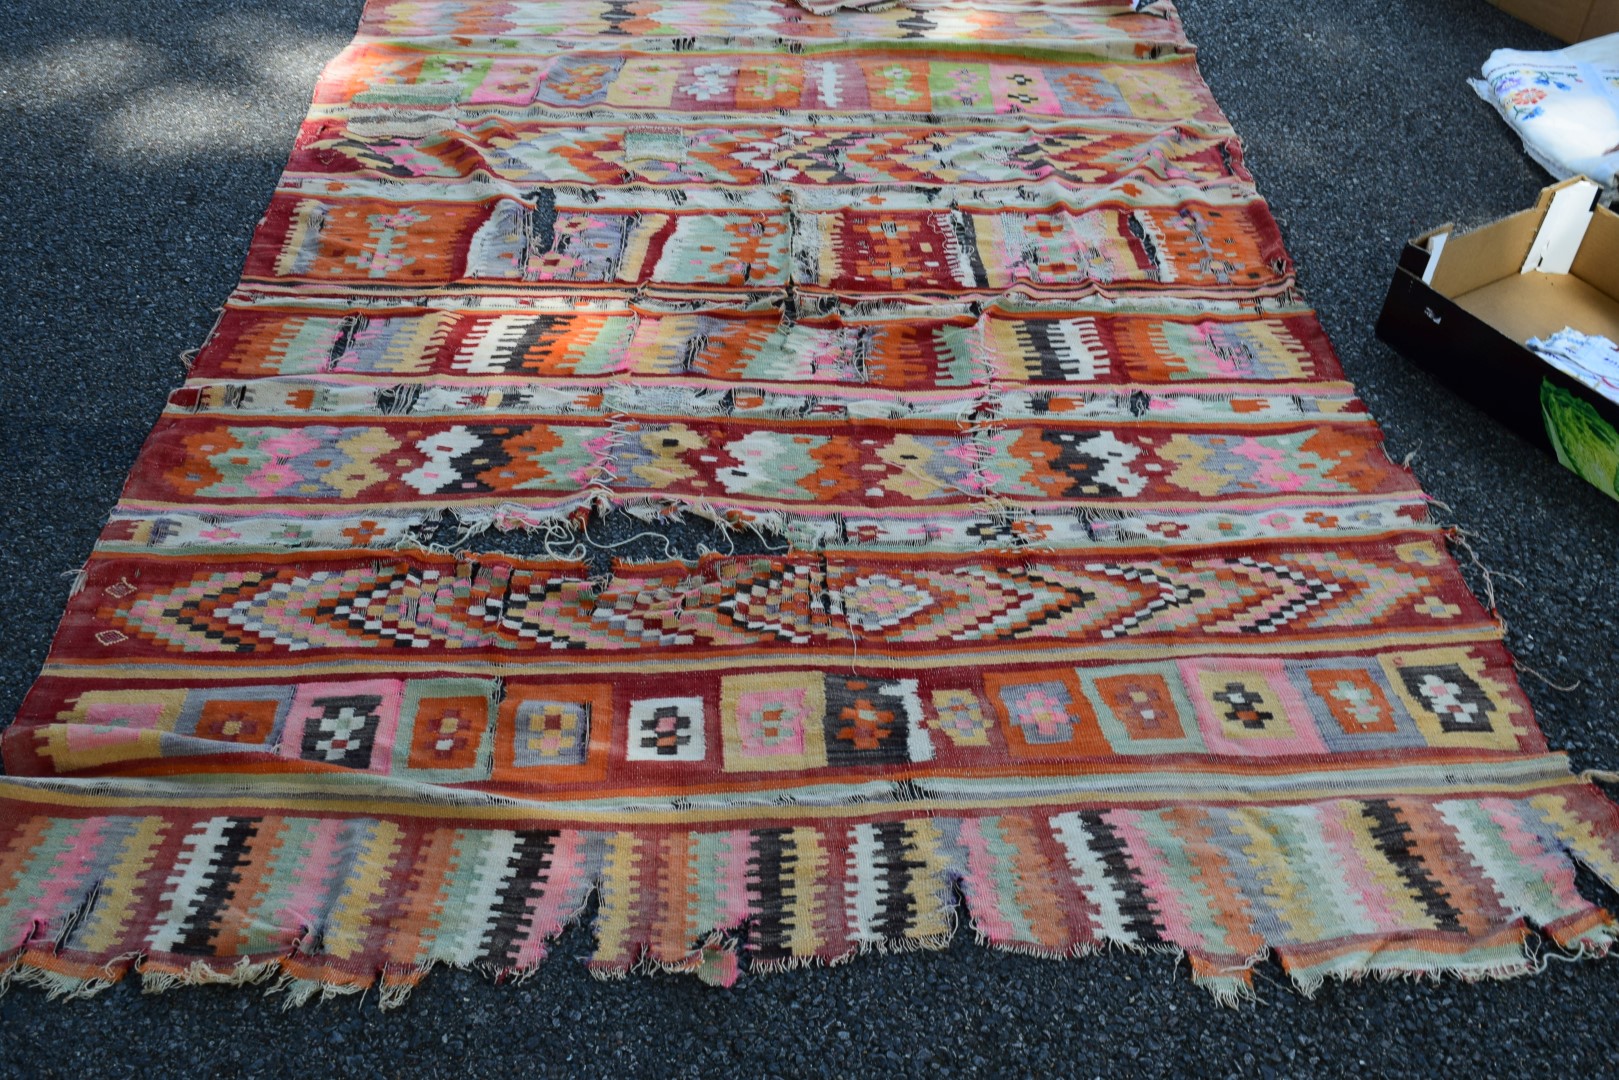 A North American Kelim flatweave rug;